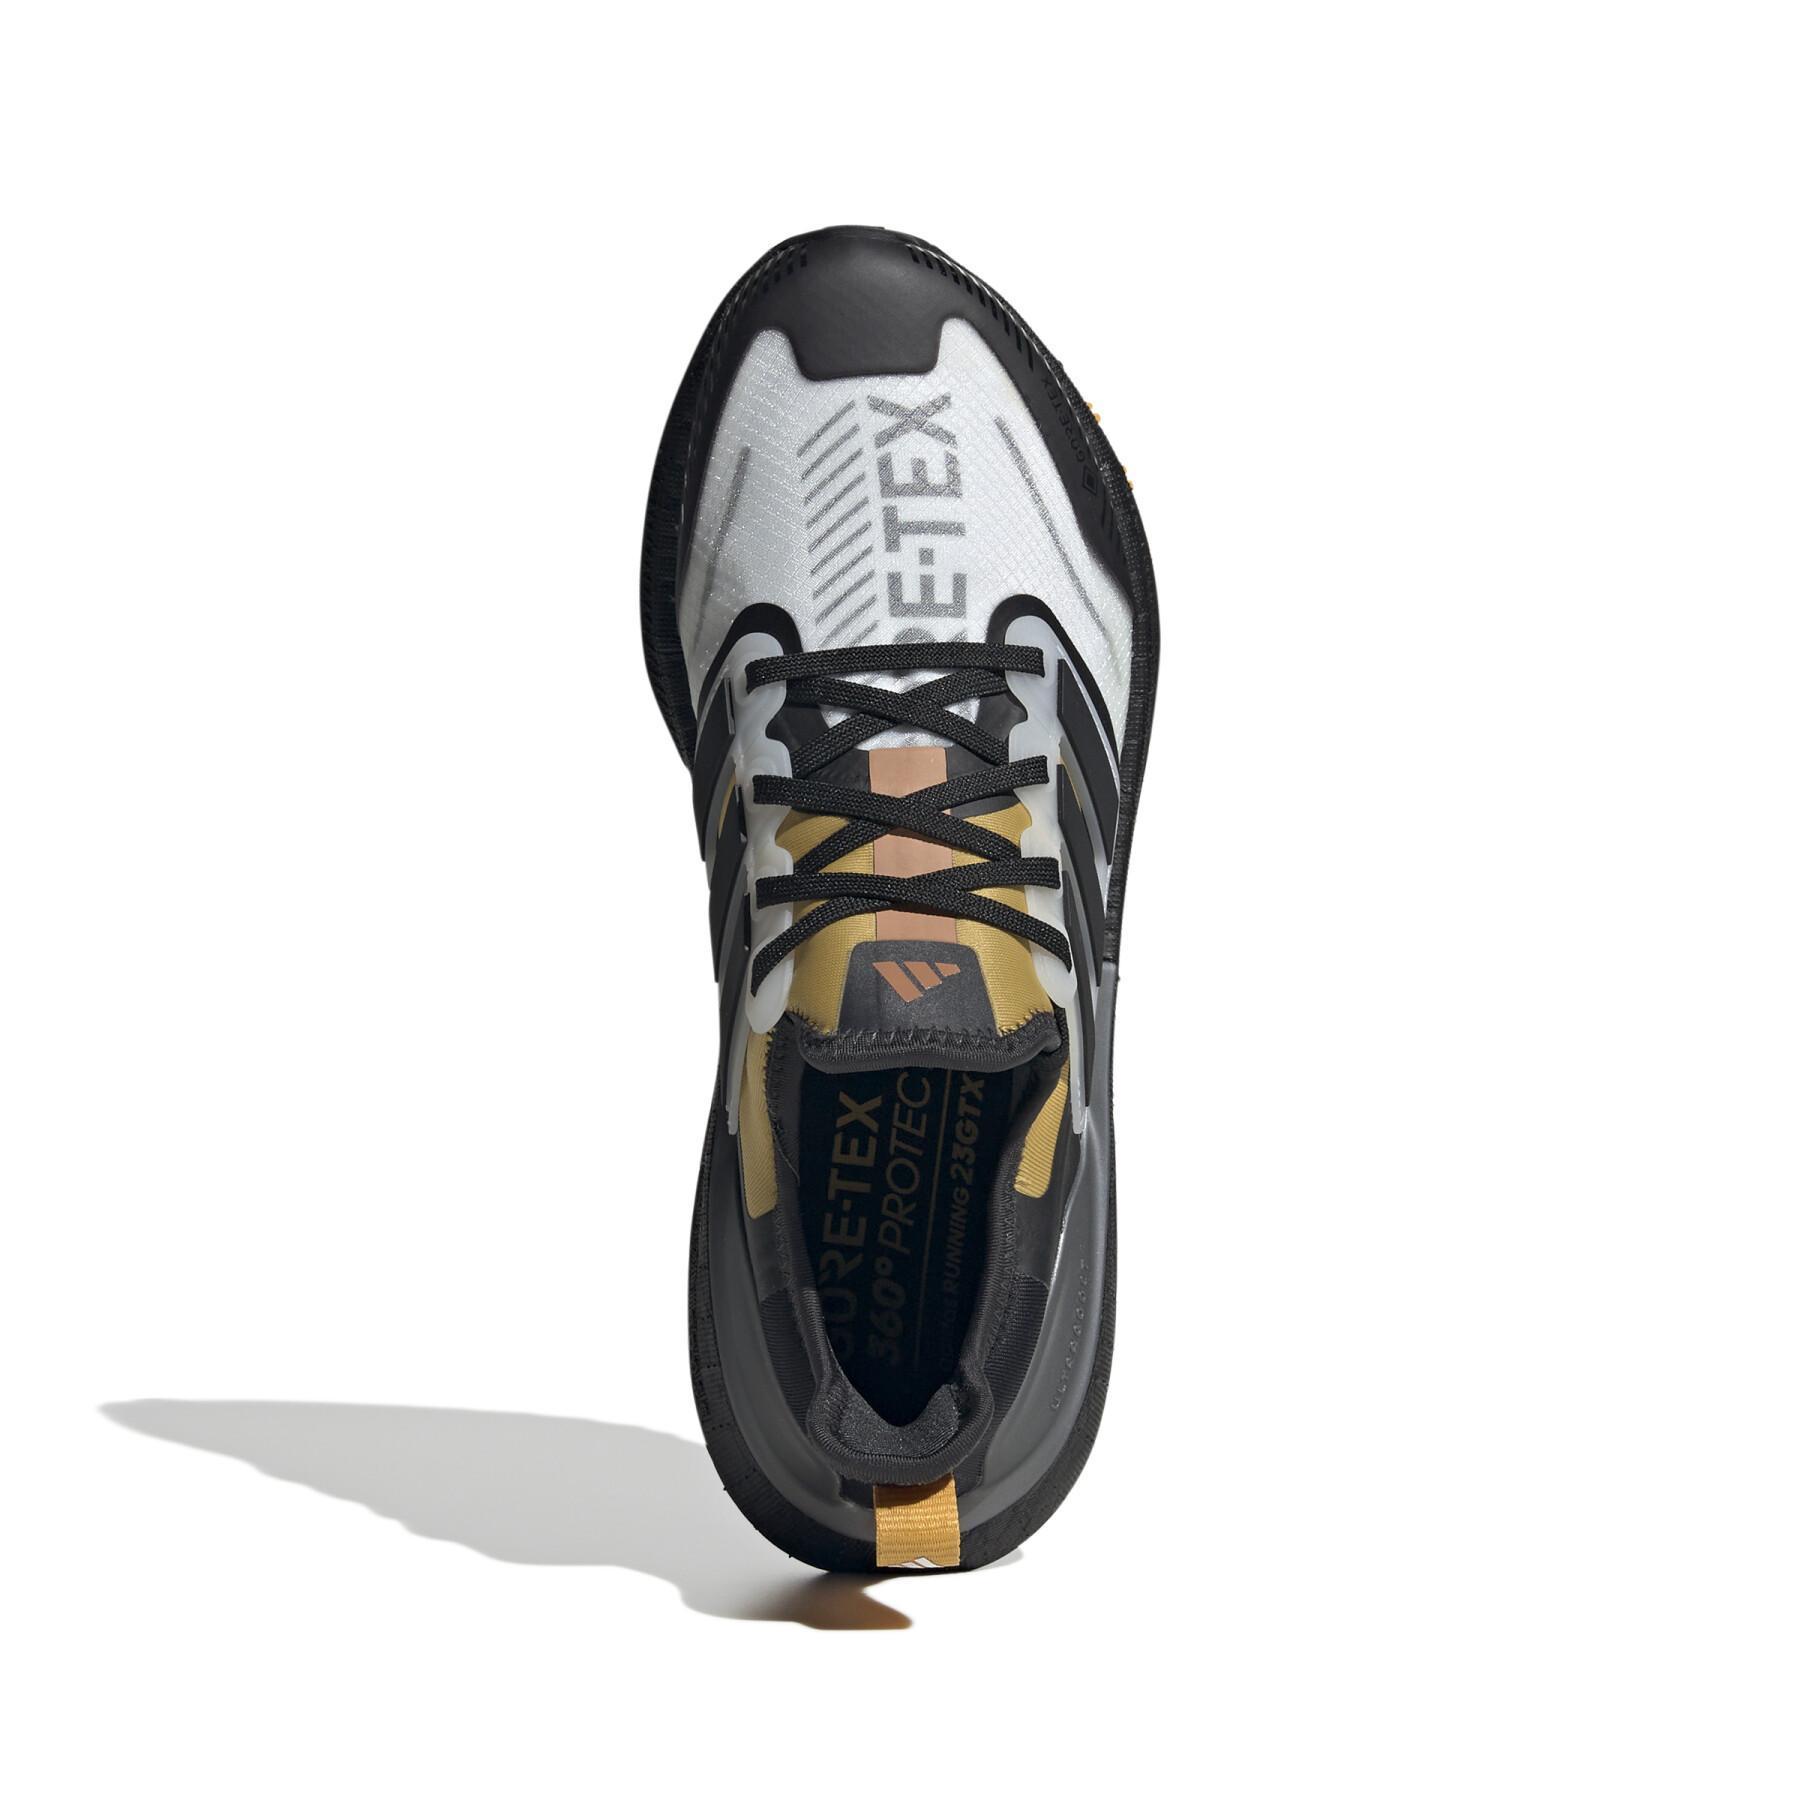 Chaussures de running femme adidas Ultraboost Light Gtx